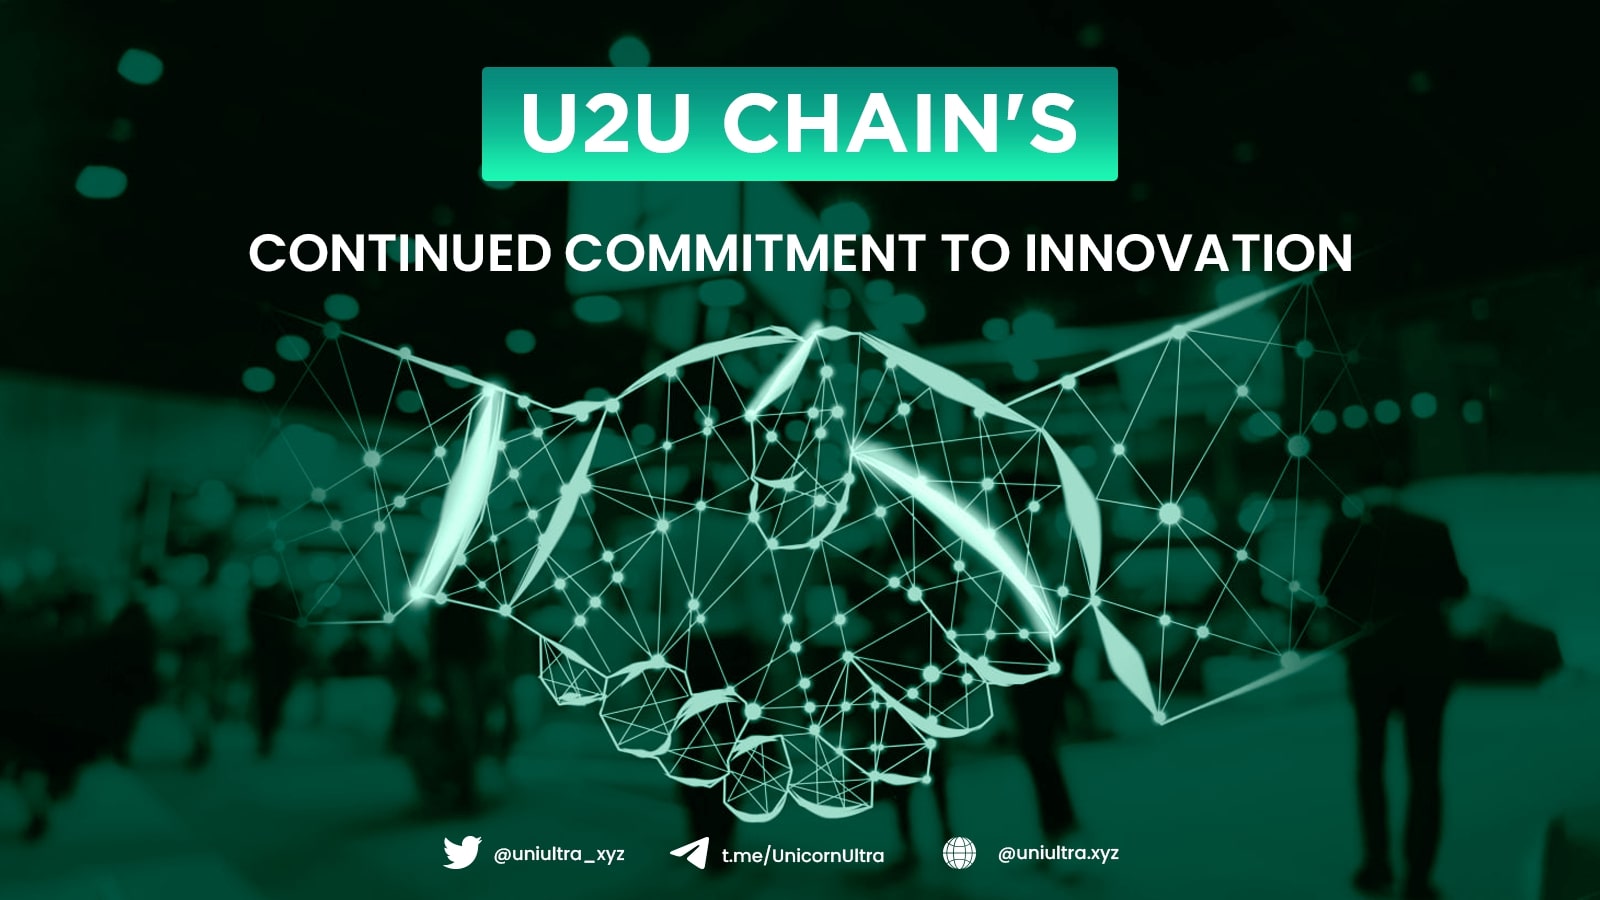 u2u chain's impact